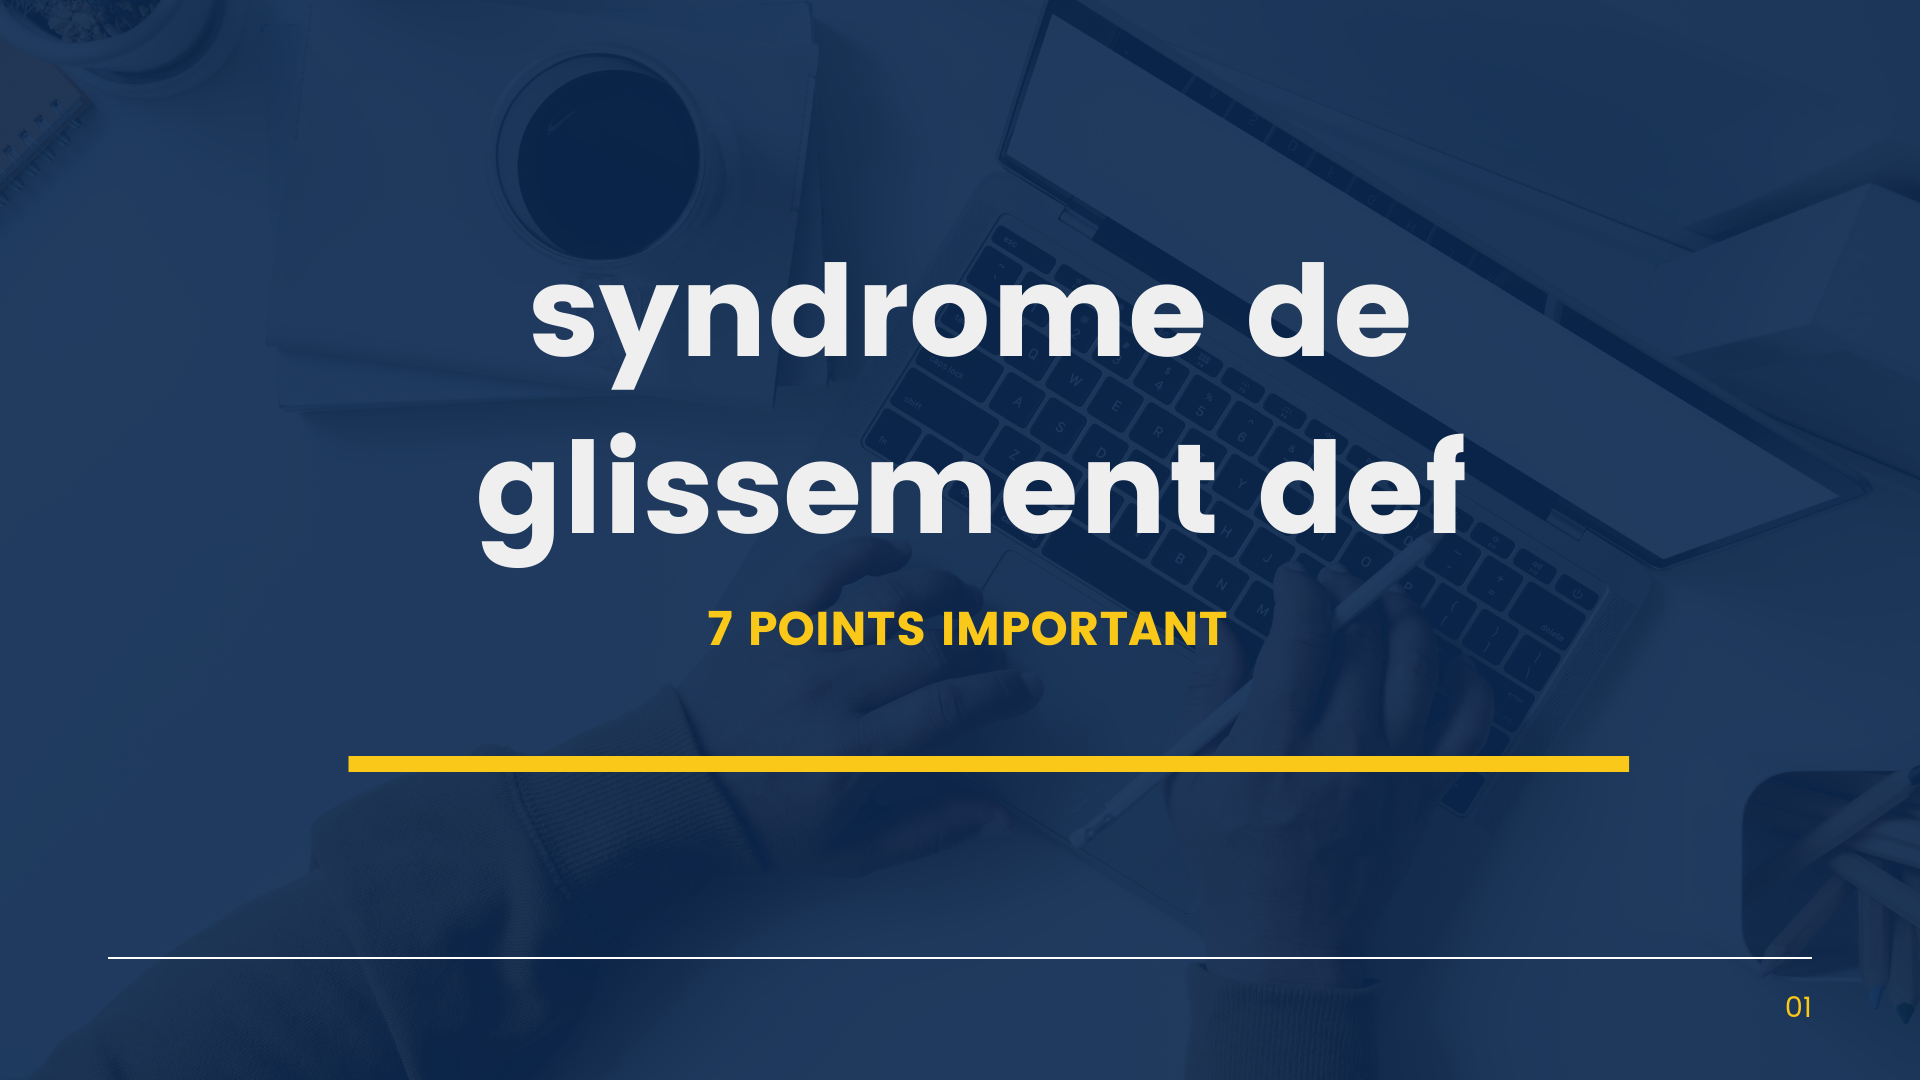 syndrome de glissement def | 7 Points Important